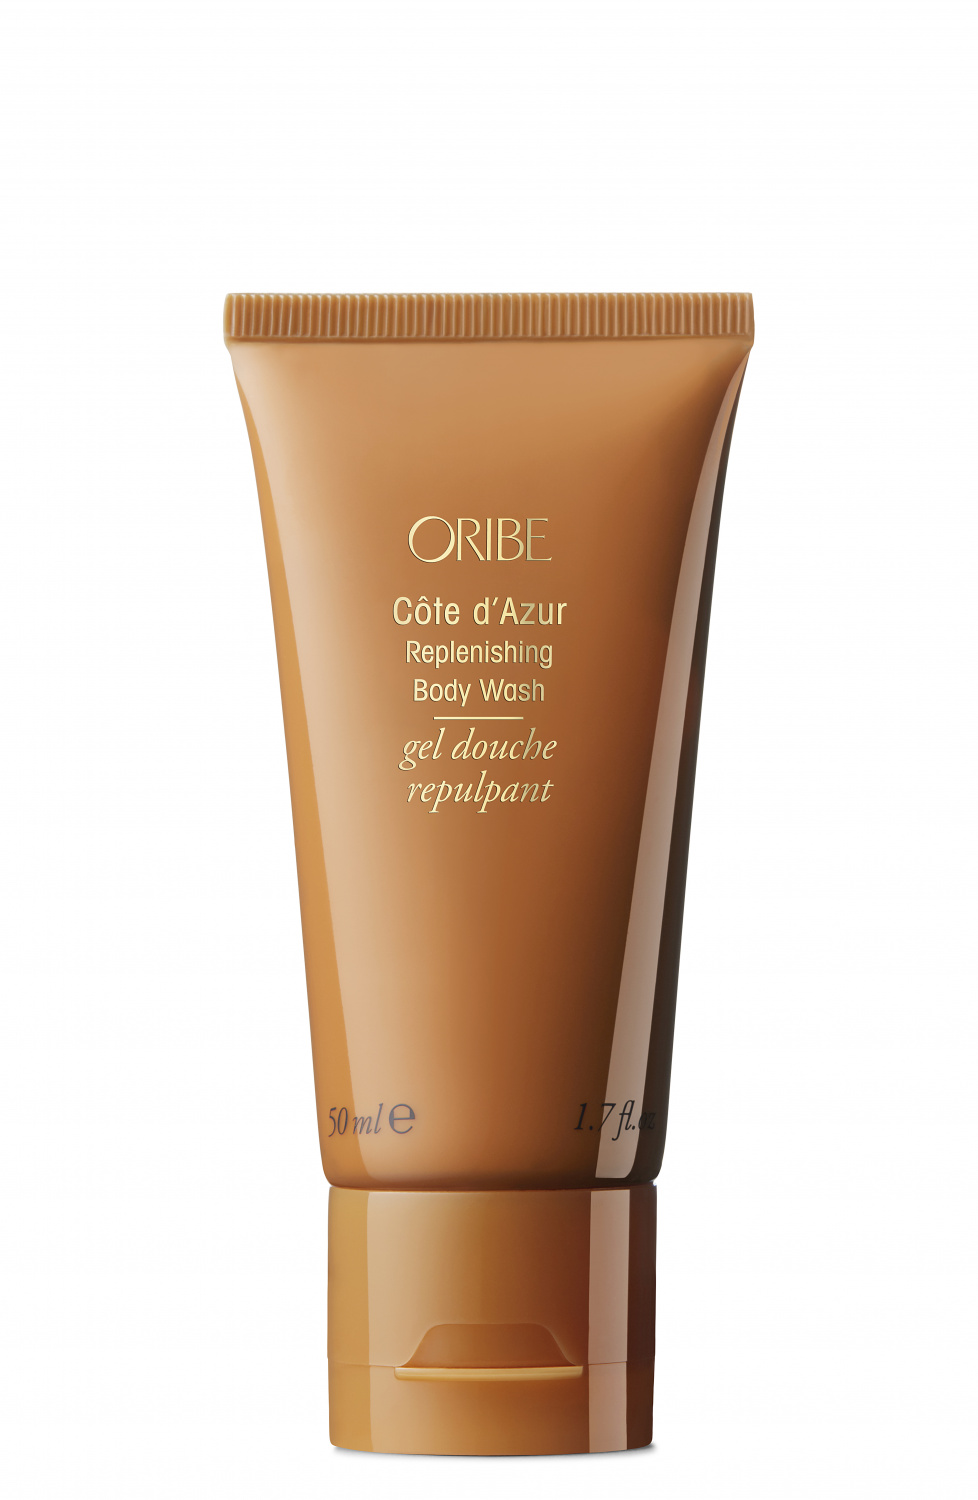 Oribe Cote d'Azur Replenishing Body Wash 50ml - интернет-магазин профессиональной косметики Spadream, изображение 41395